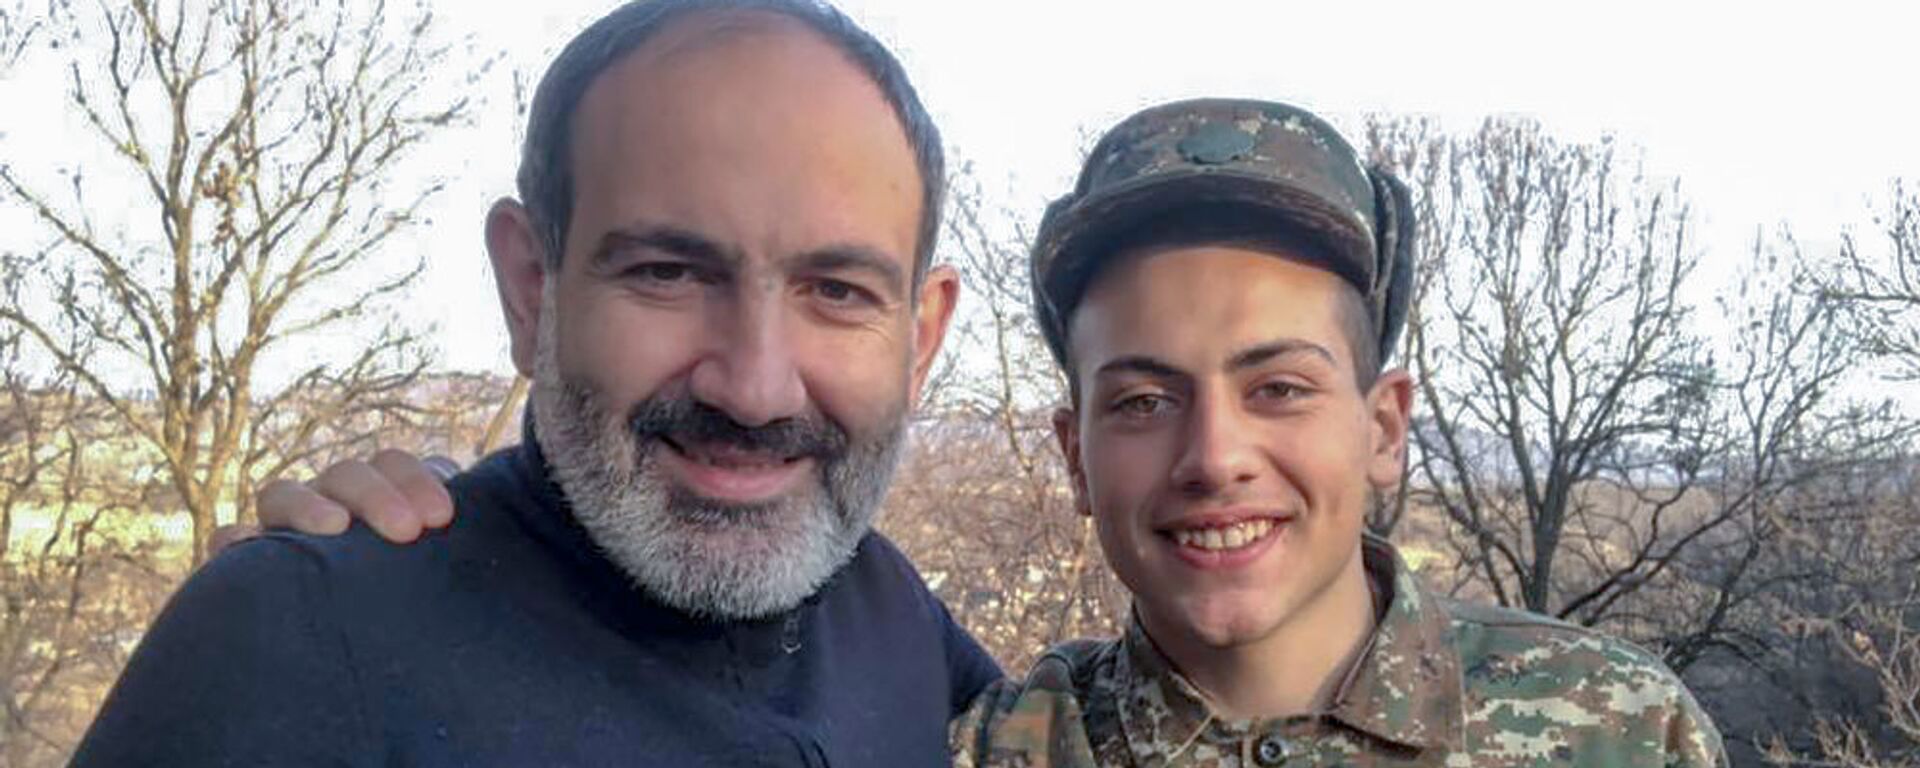 Селфи премьер-министра Никола Пашиняна с сыном Ашотом (11 марта 2019). - Sputnik Армения, 1920, 08.06.2021